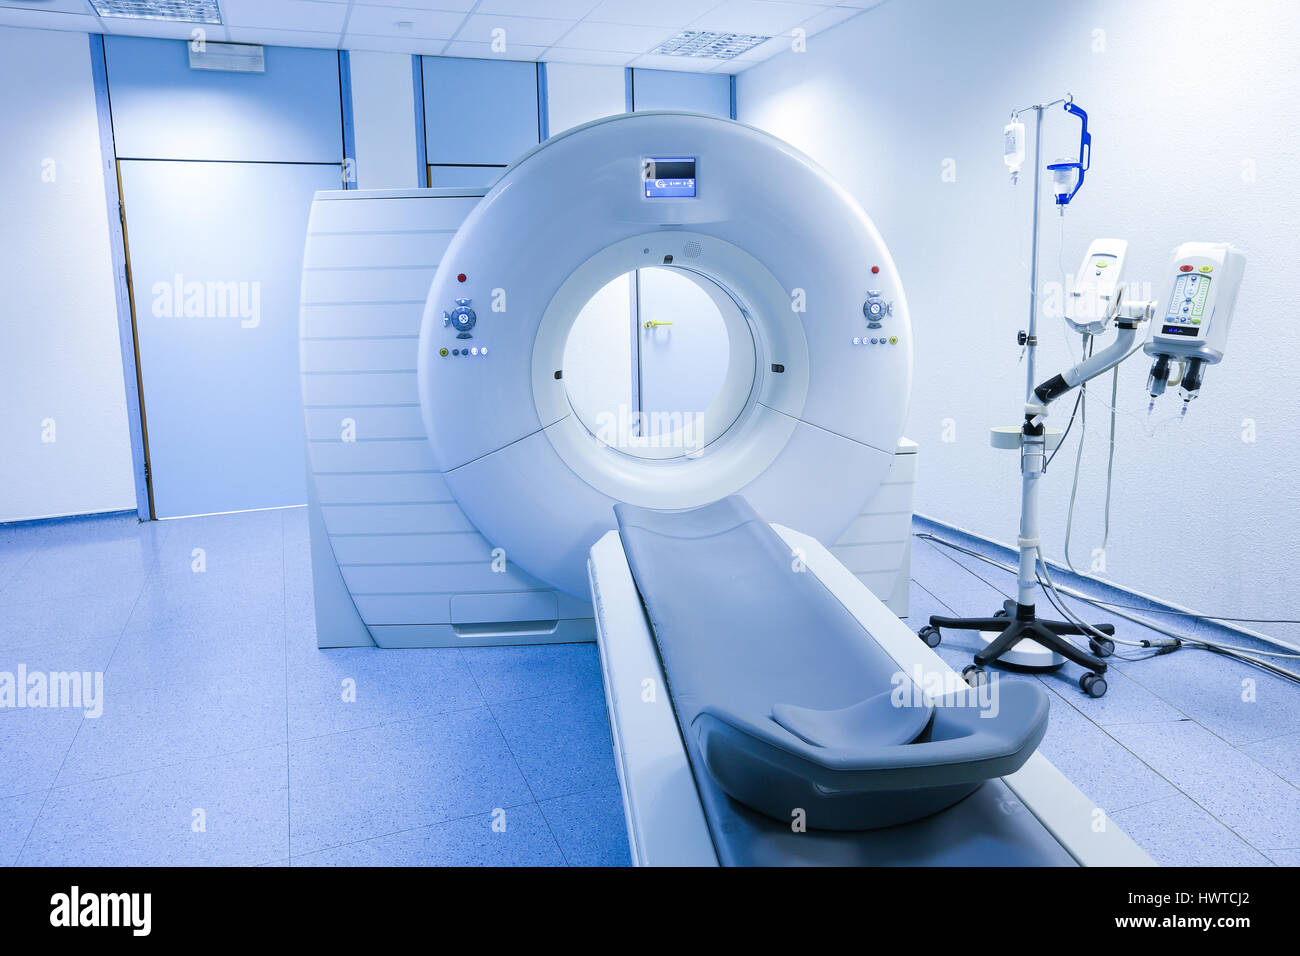 CT (Computertomographie-Tomographie) Scanner im Krankenhauslabor. Gesundheitswesen, Medizintechnik, High-Tech-Ausrüstung und Diagnose-Konzept mit Textfreiraum. Stockfoto